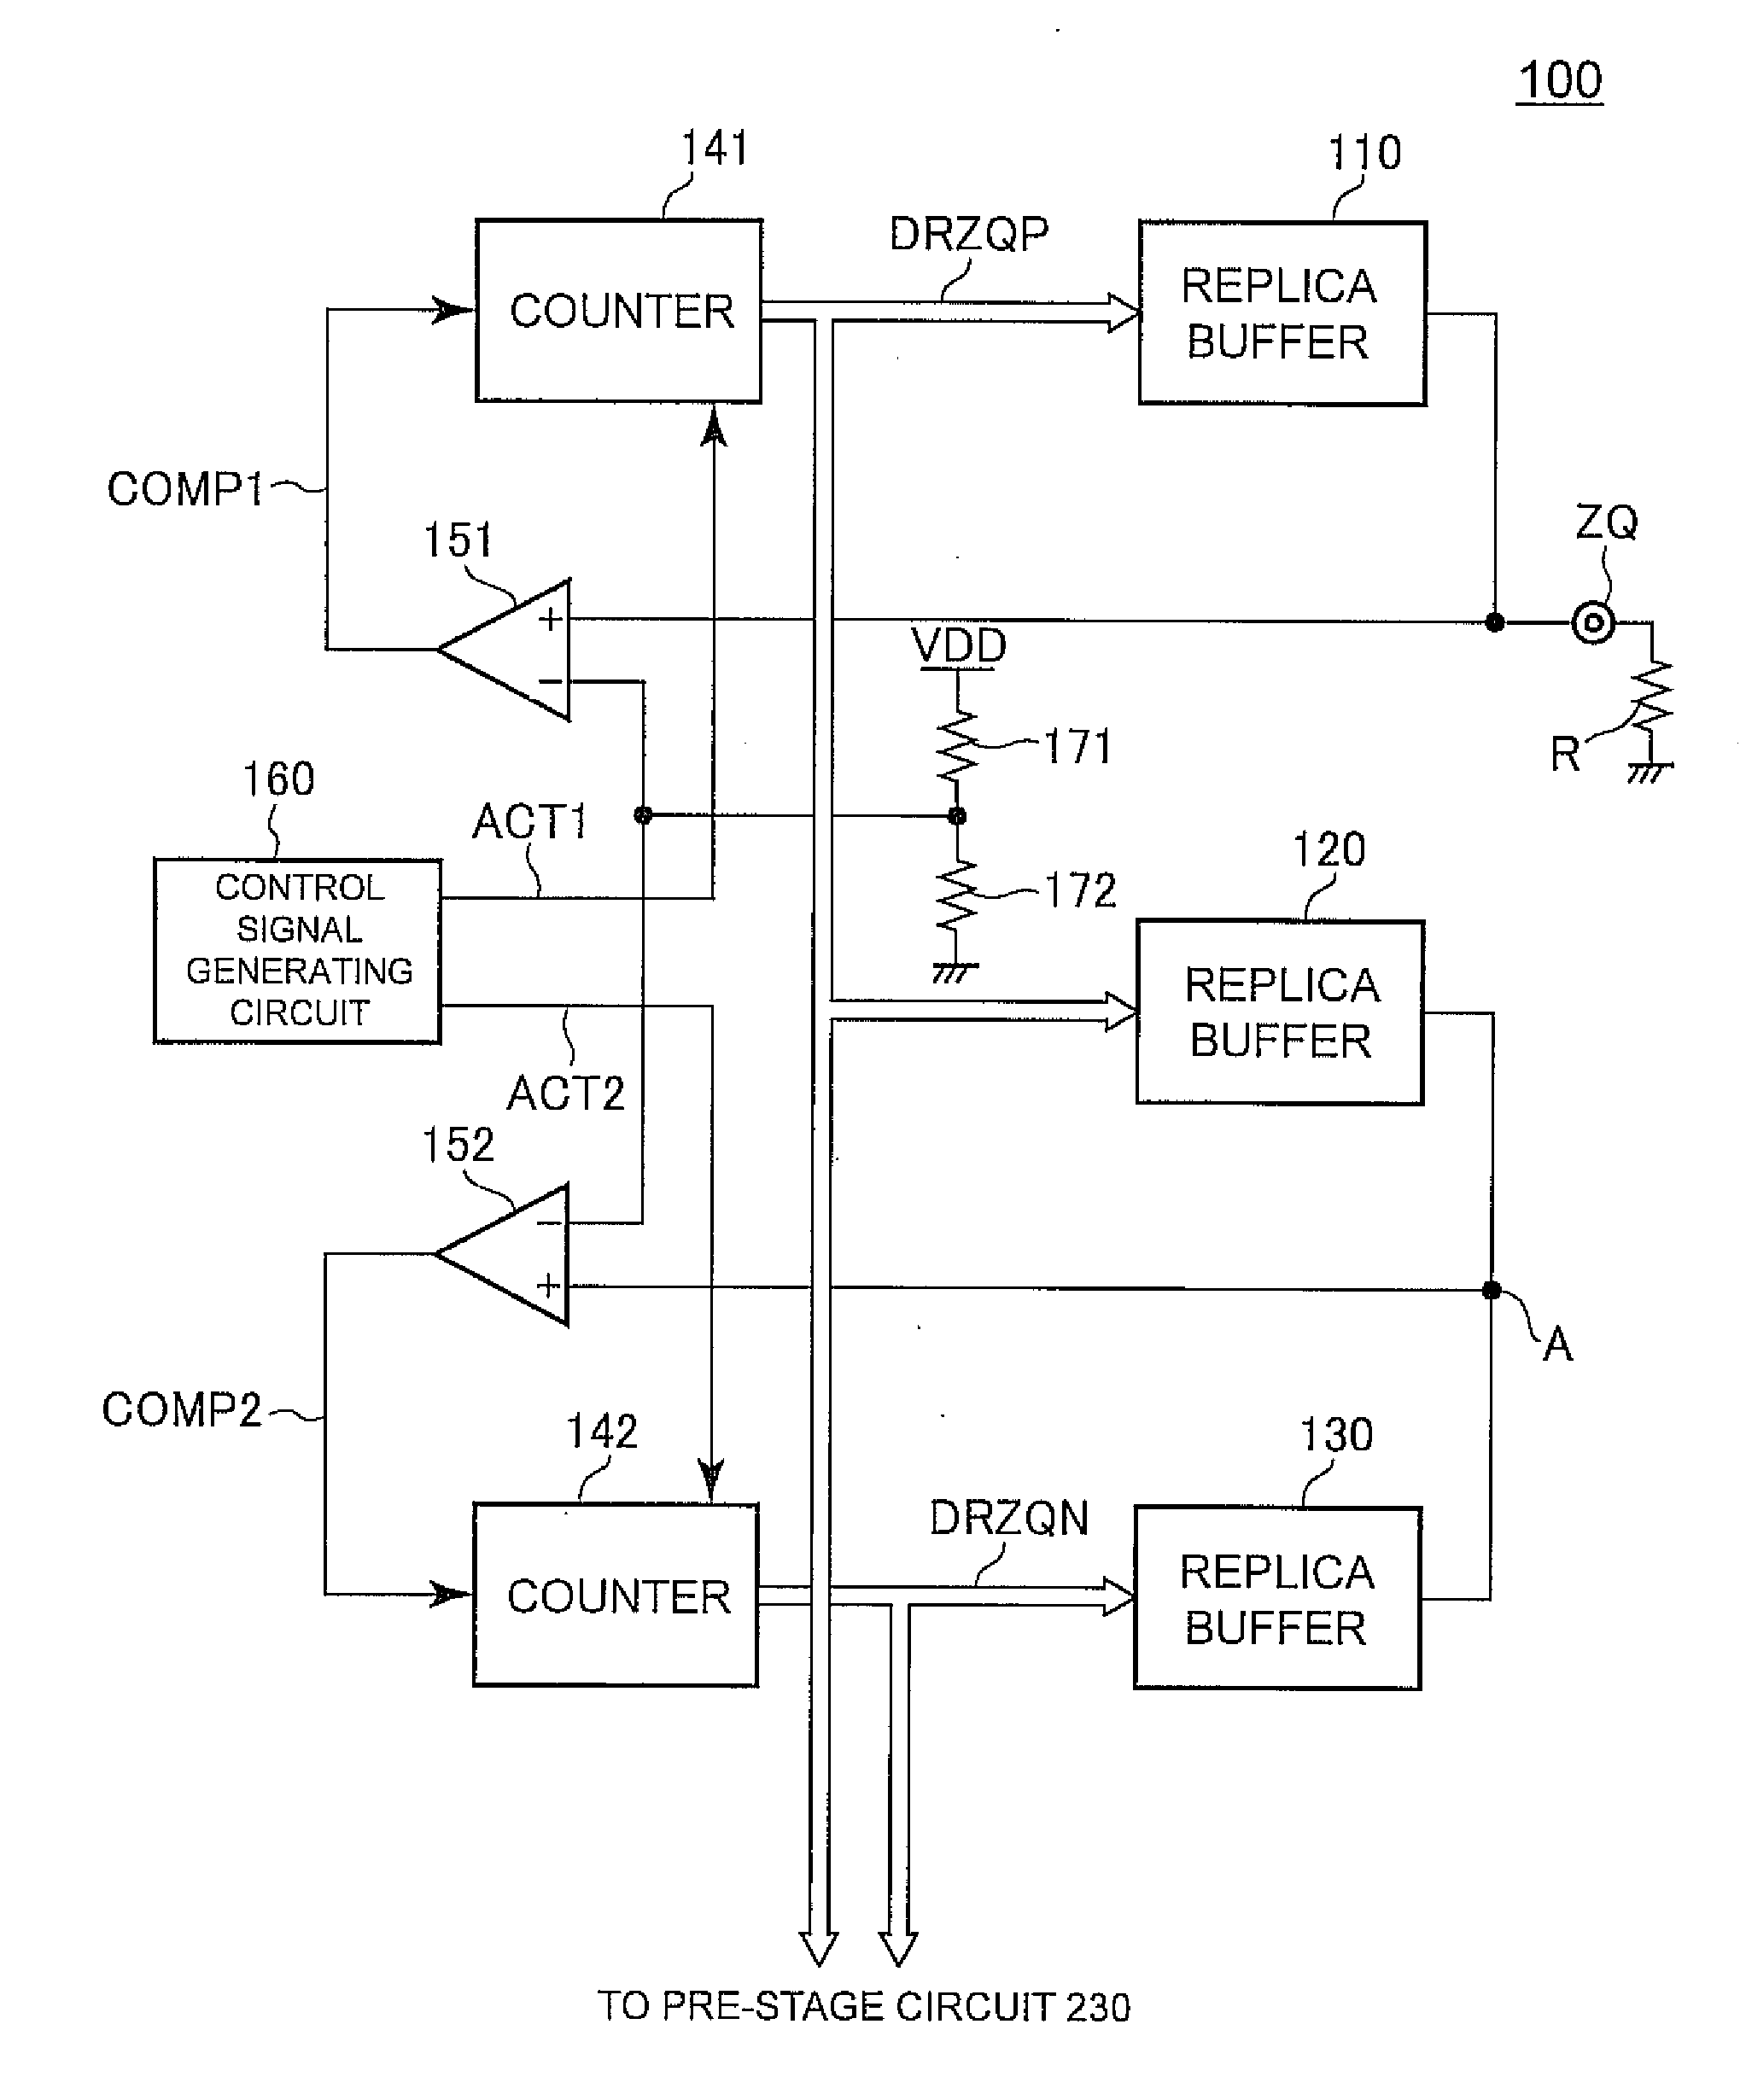 Calibration circuit